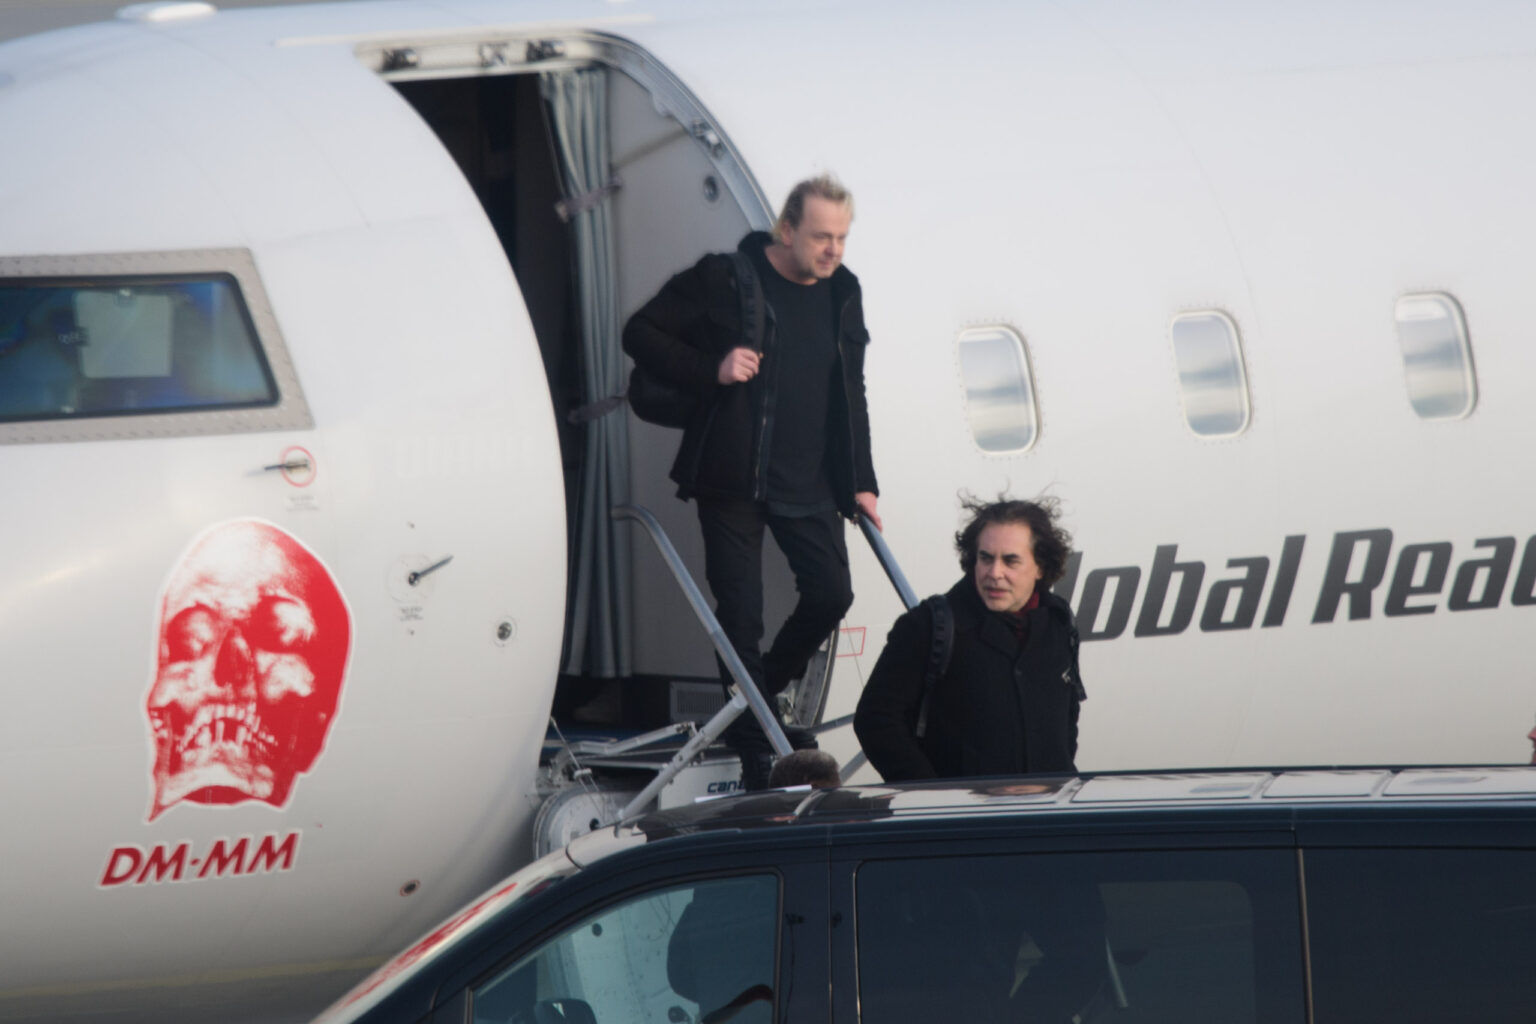 Przylot Depeche mode na lodzkie lotnisko fot Sebastian Szwajkowski 20